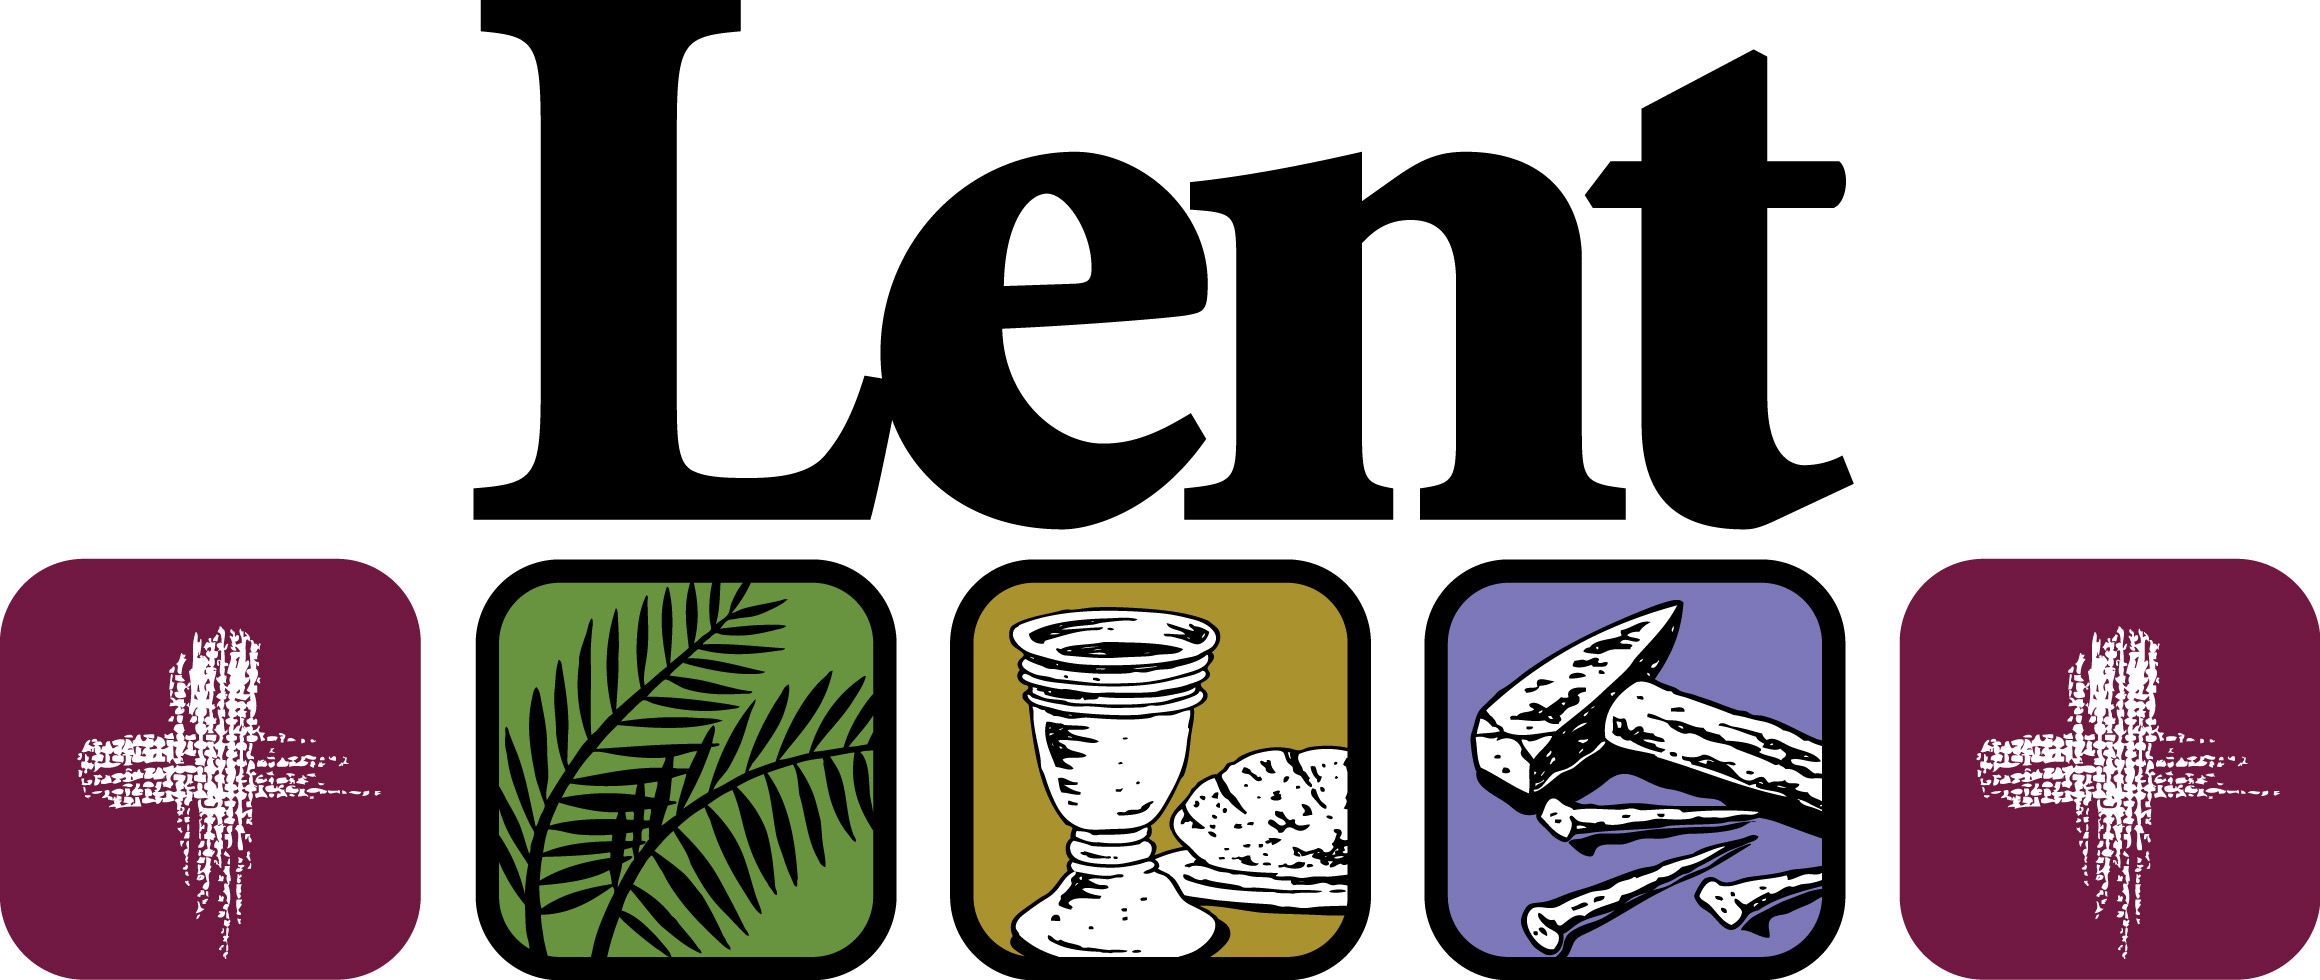 Lent Clip Art Free. Lent u201